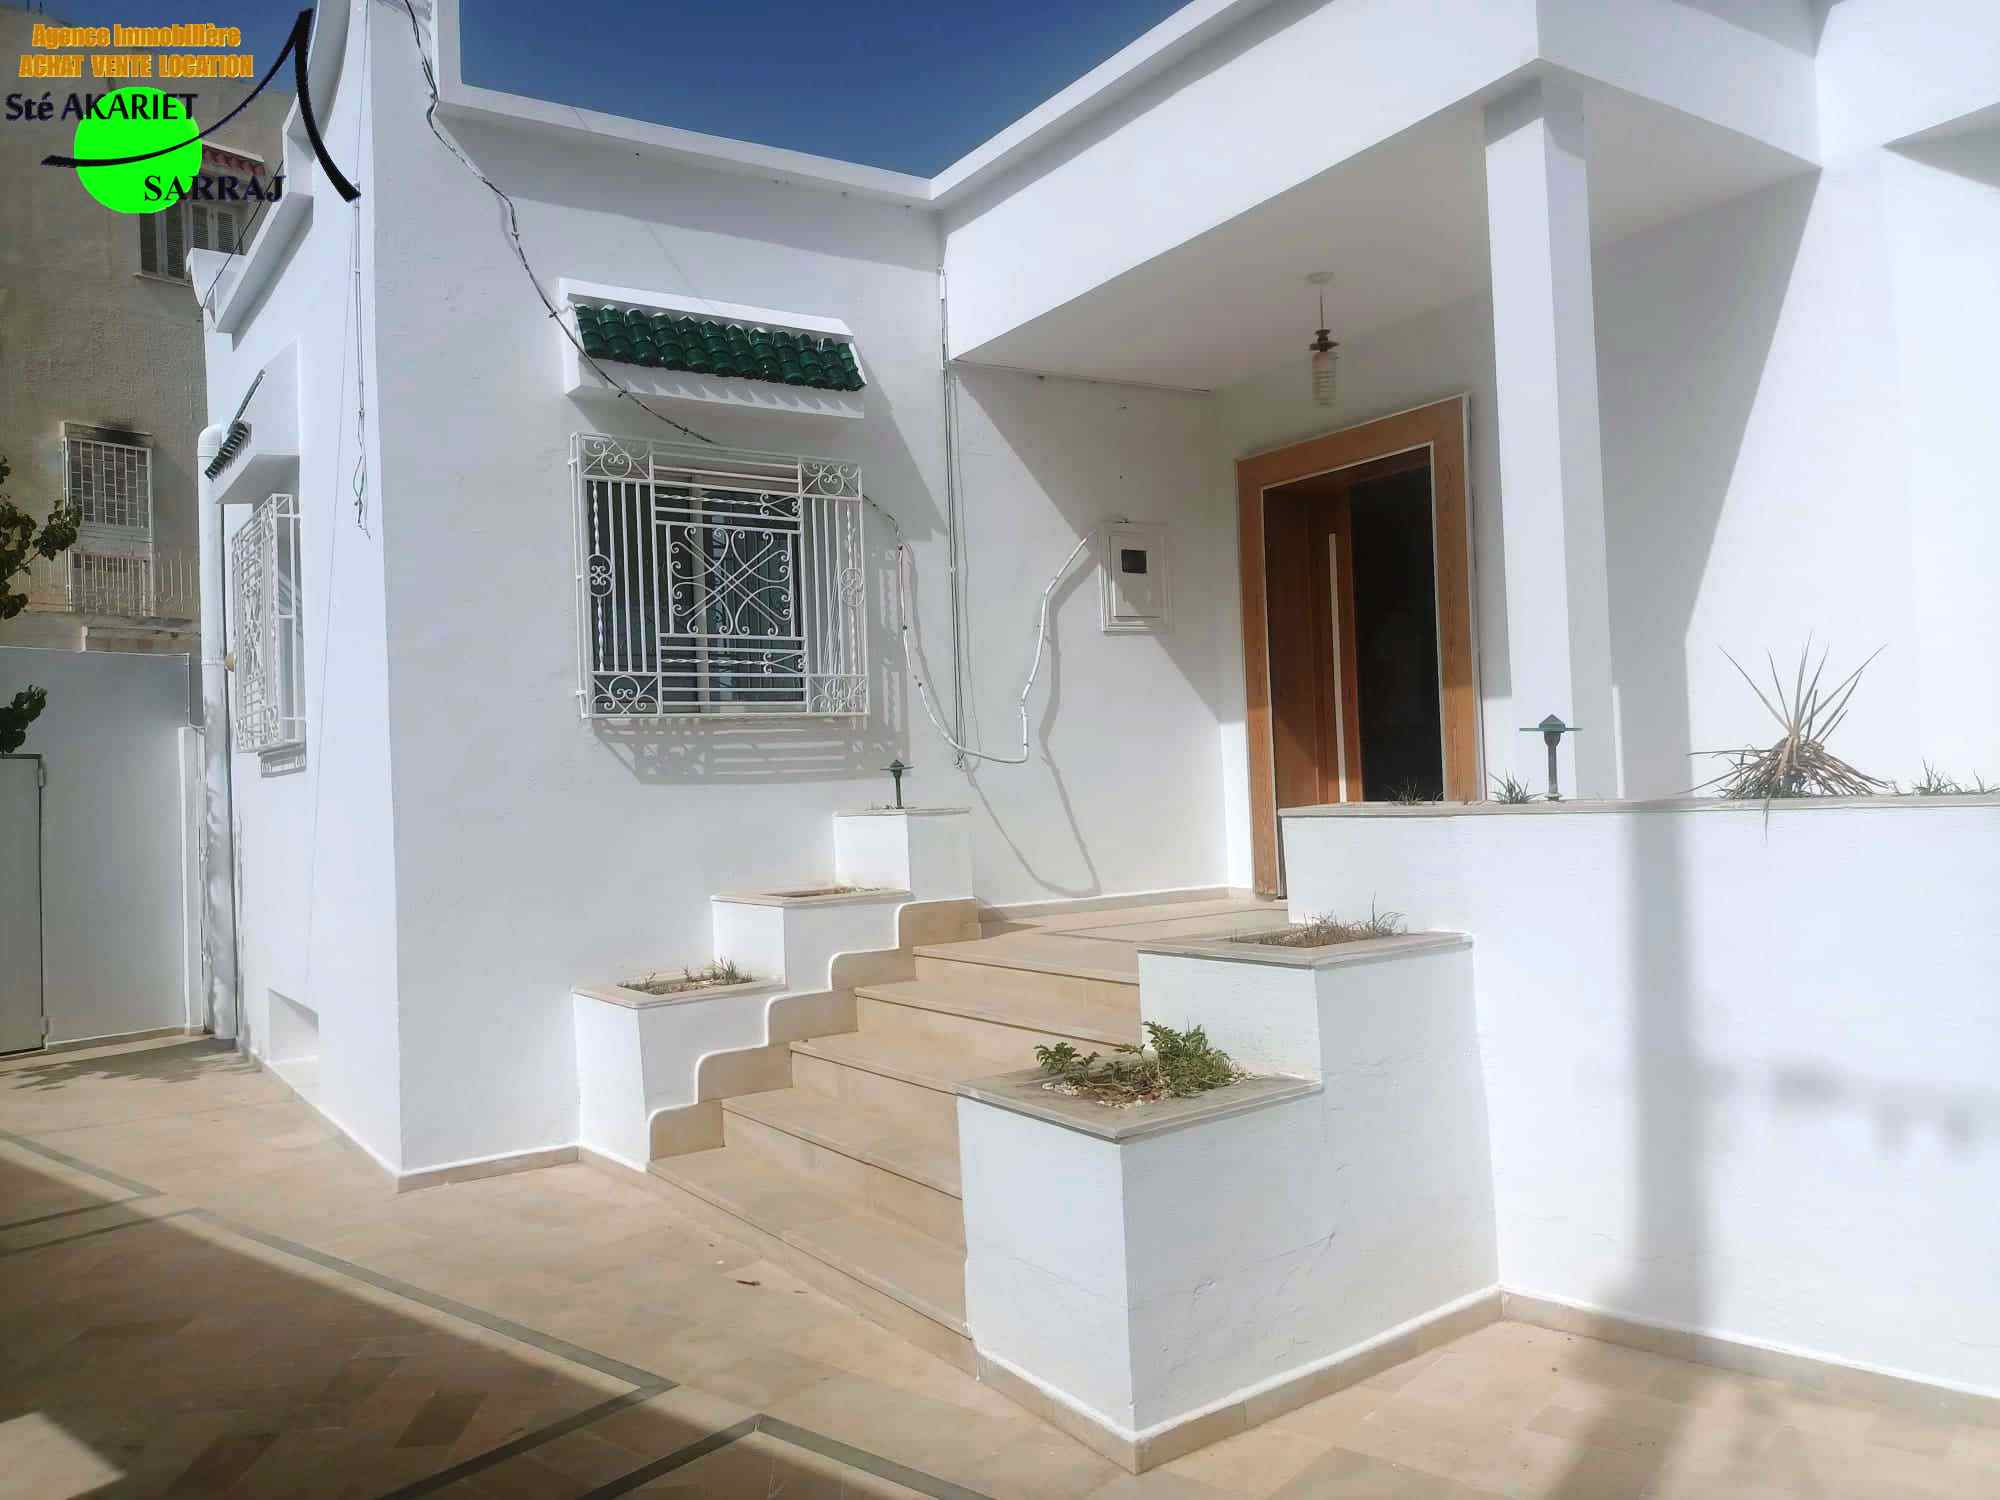 Sousse Riadh Sousse Riadh Vente Maisons Villa et garage prs park cit riadh 3